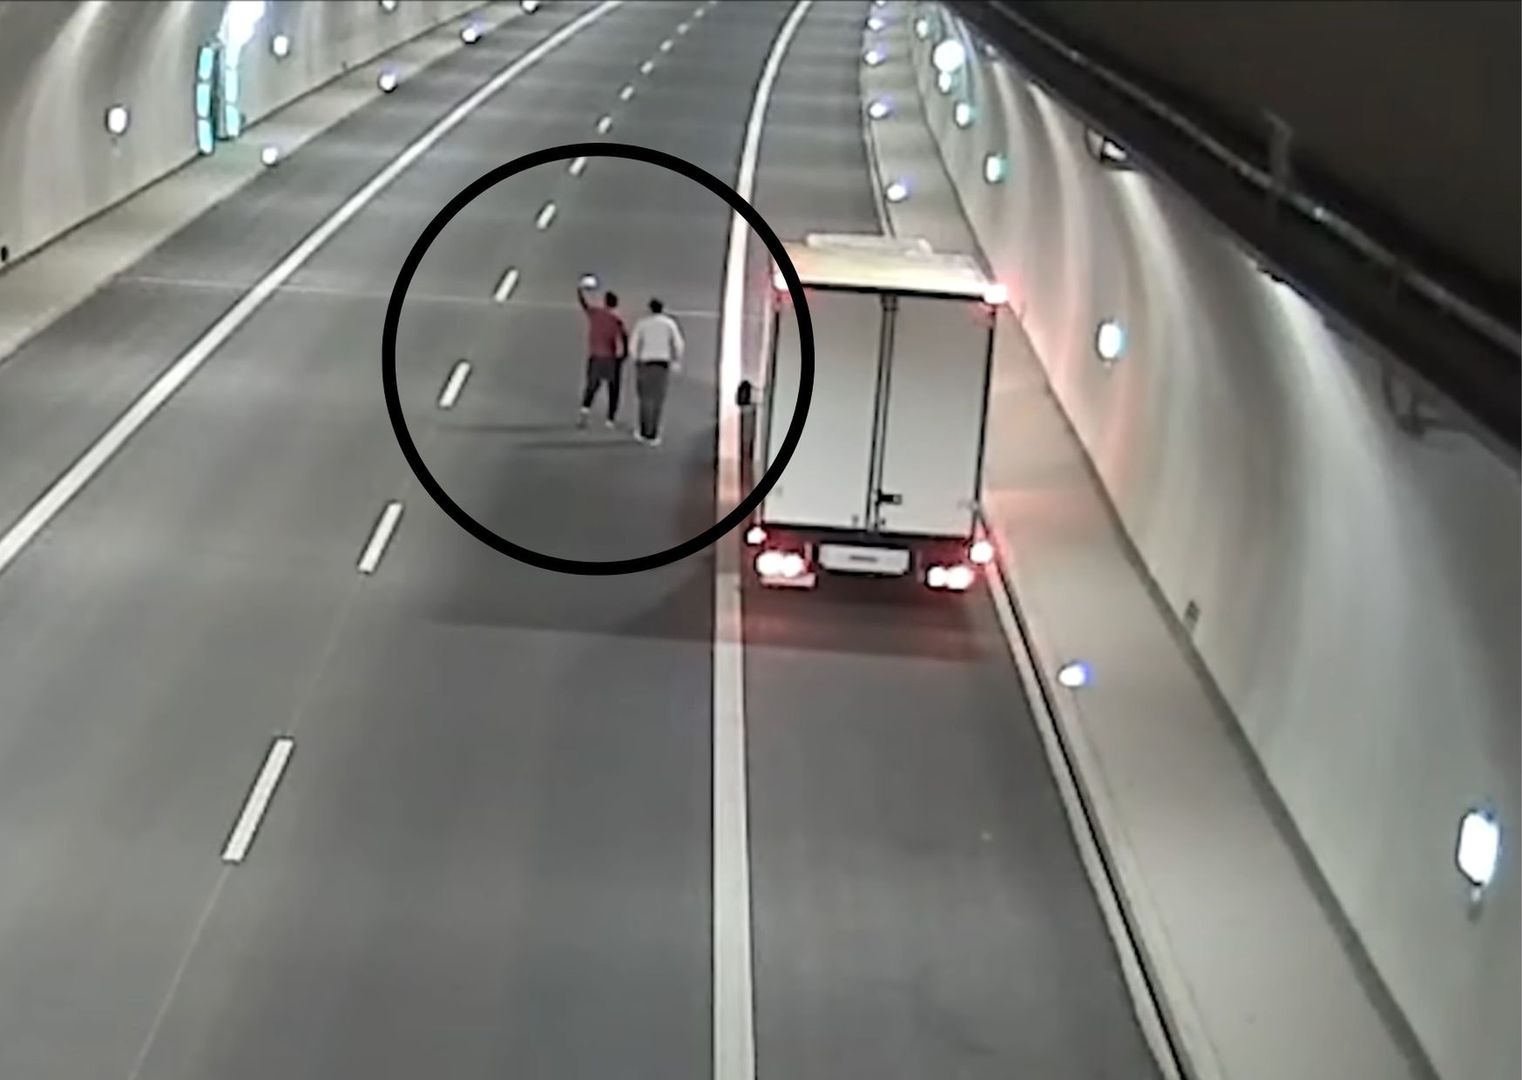 Kierowcy wysiadają z aut pośrodku tunelu. Przyczyna ich zachowania szokuje